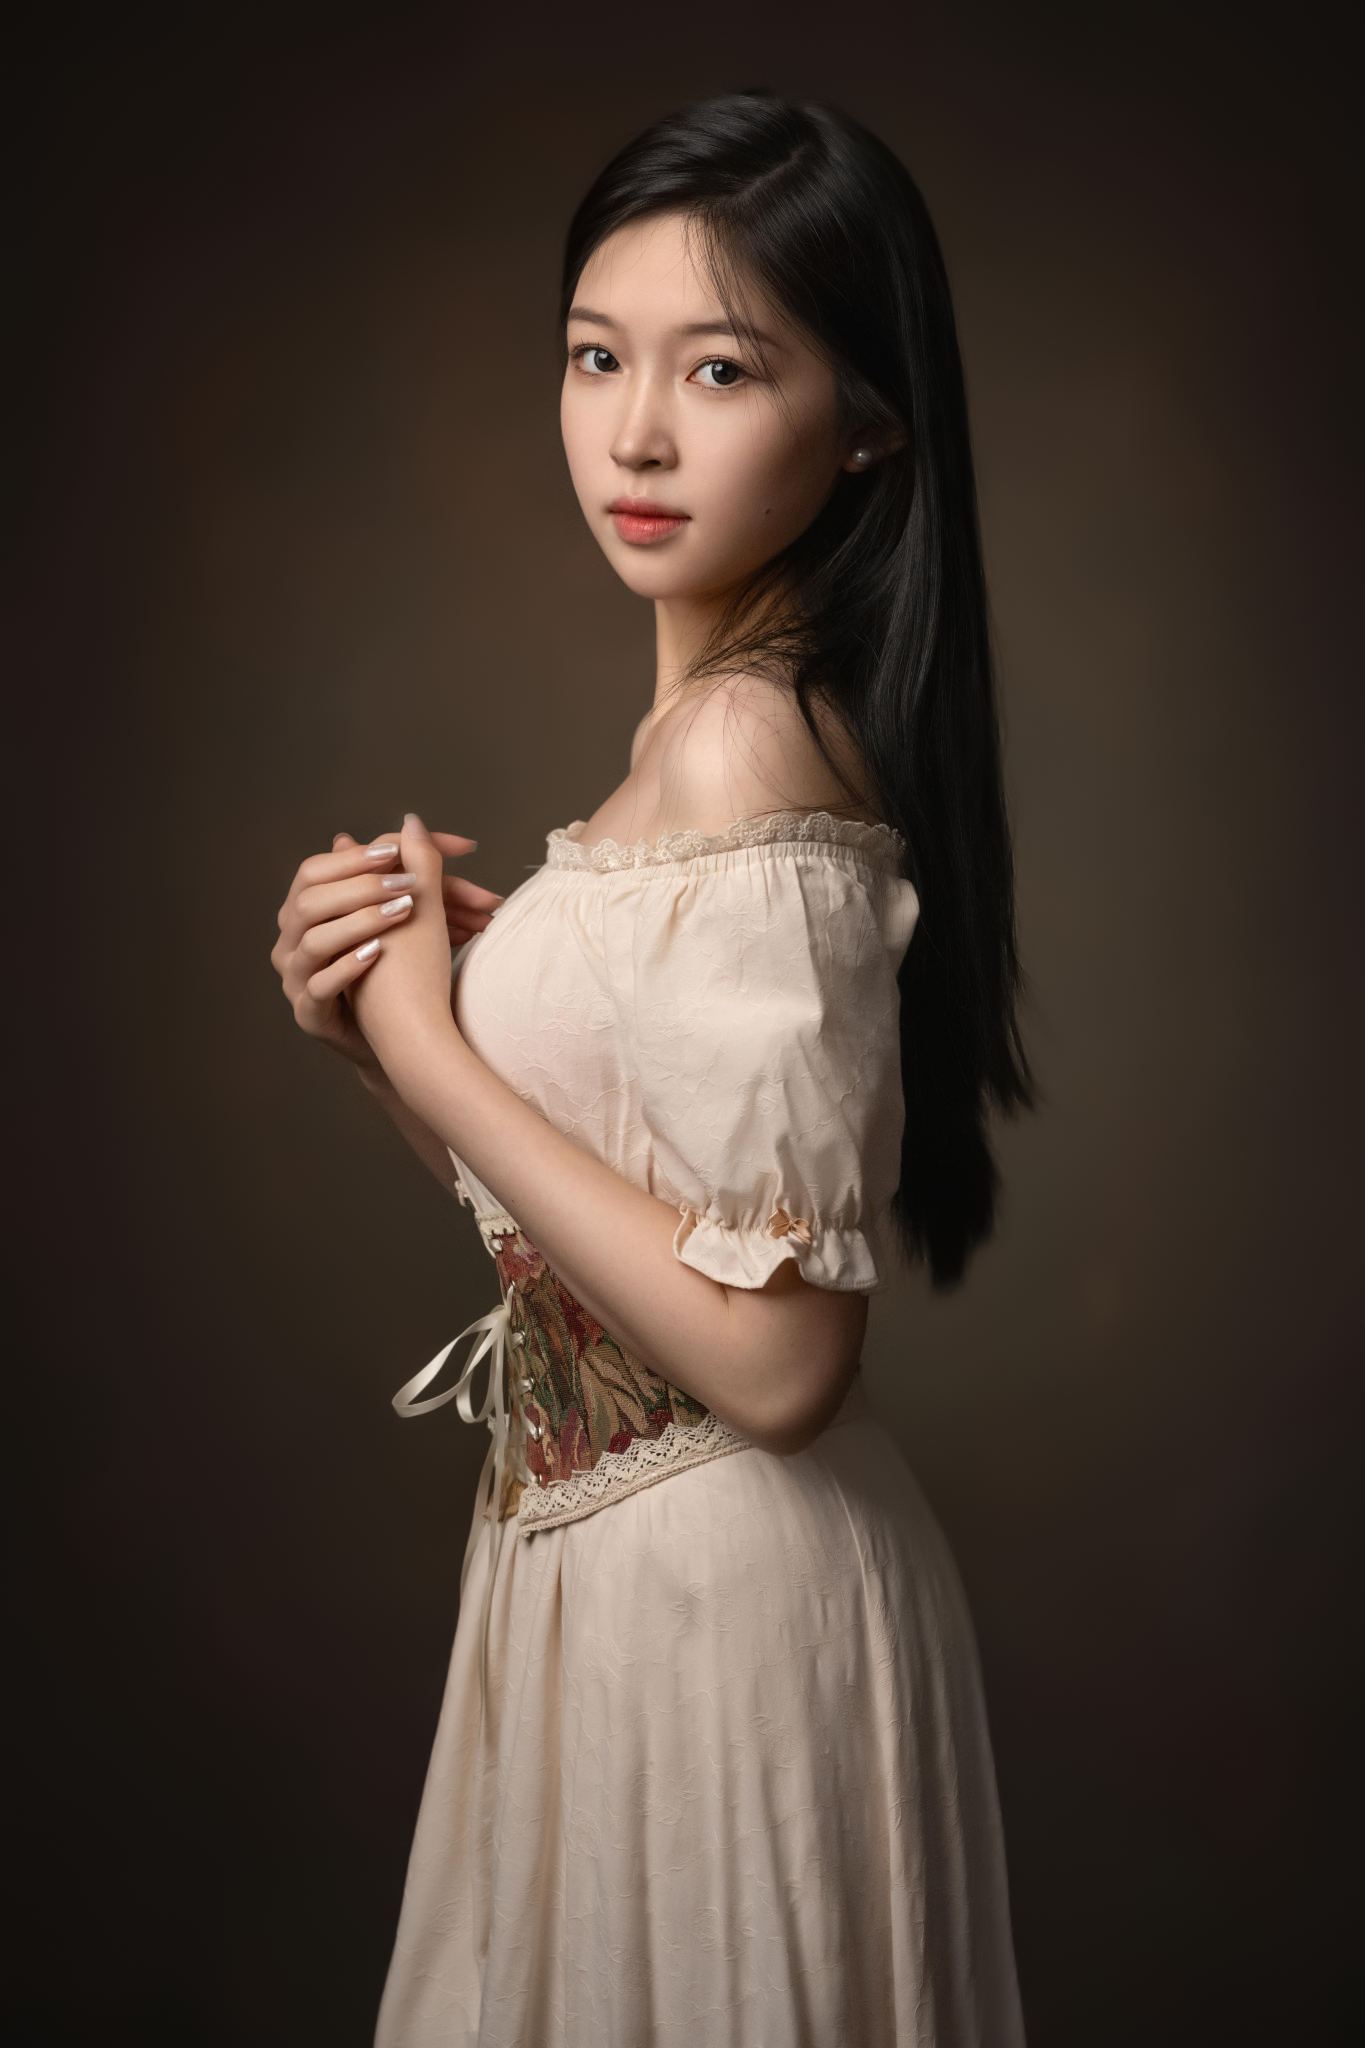 Lee Hu Women Asian Dress Dark Hair Bare Shoulders Model Brunette Portrait Studio 1365x2048